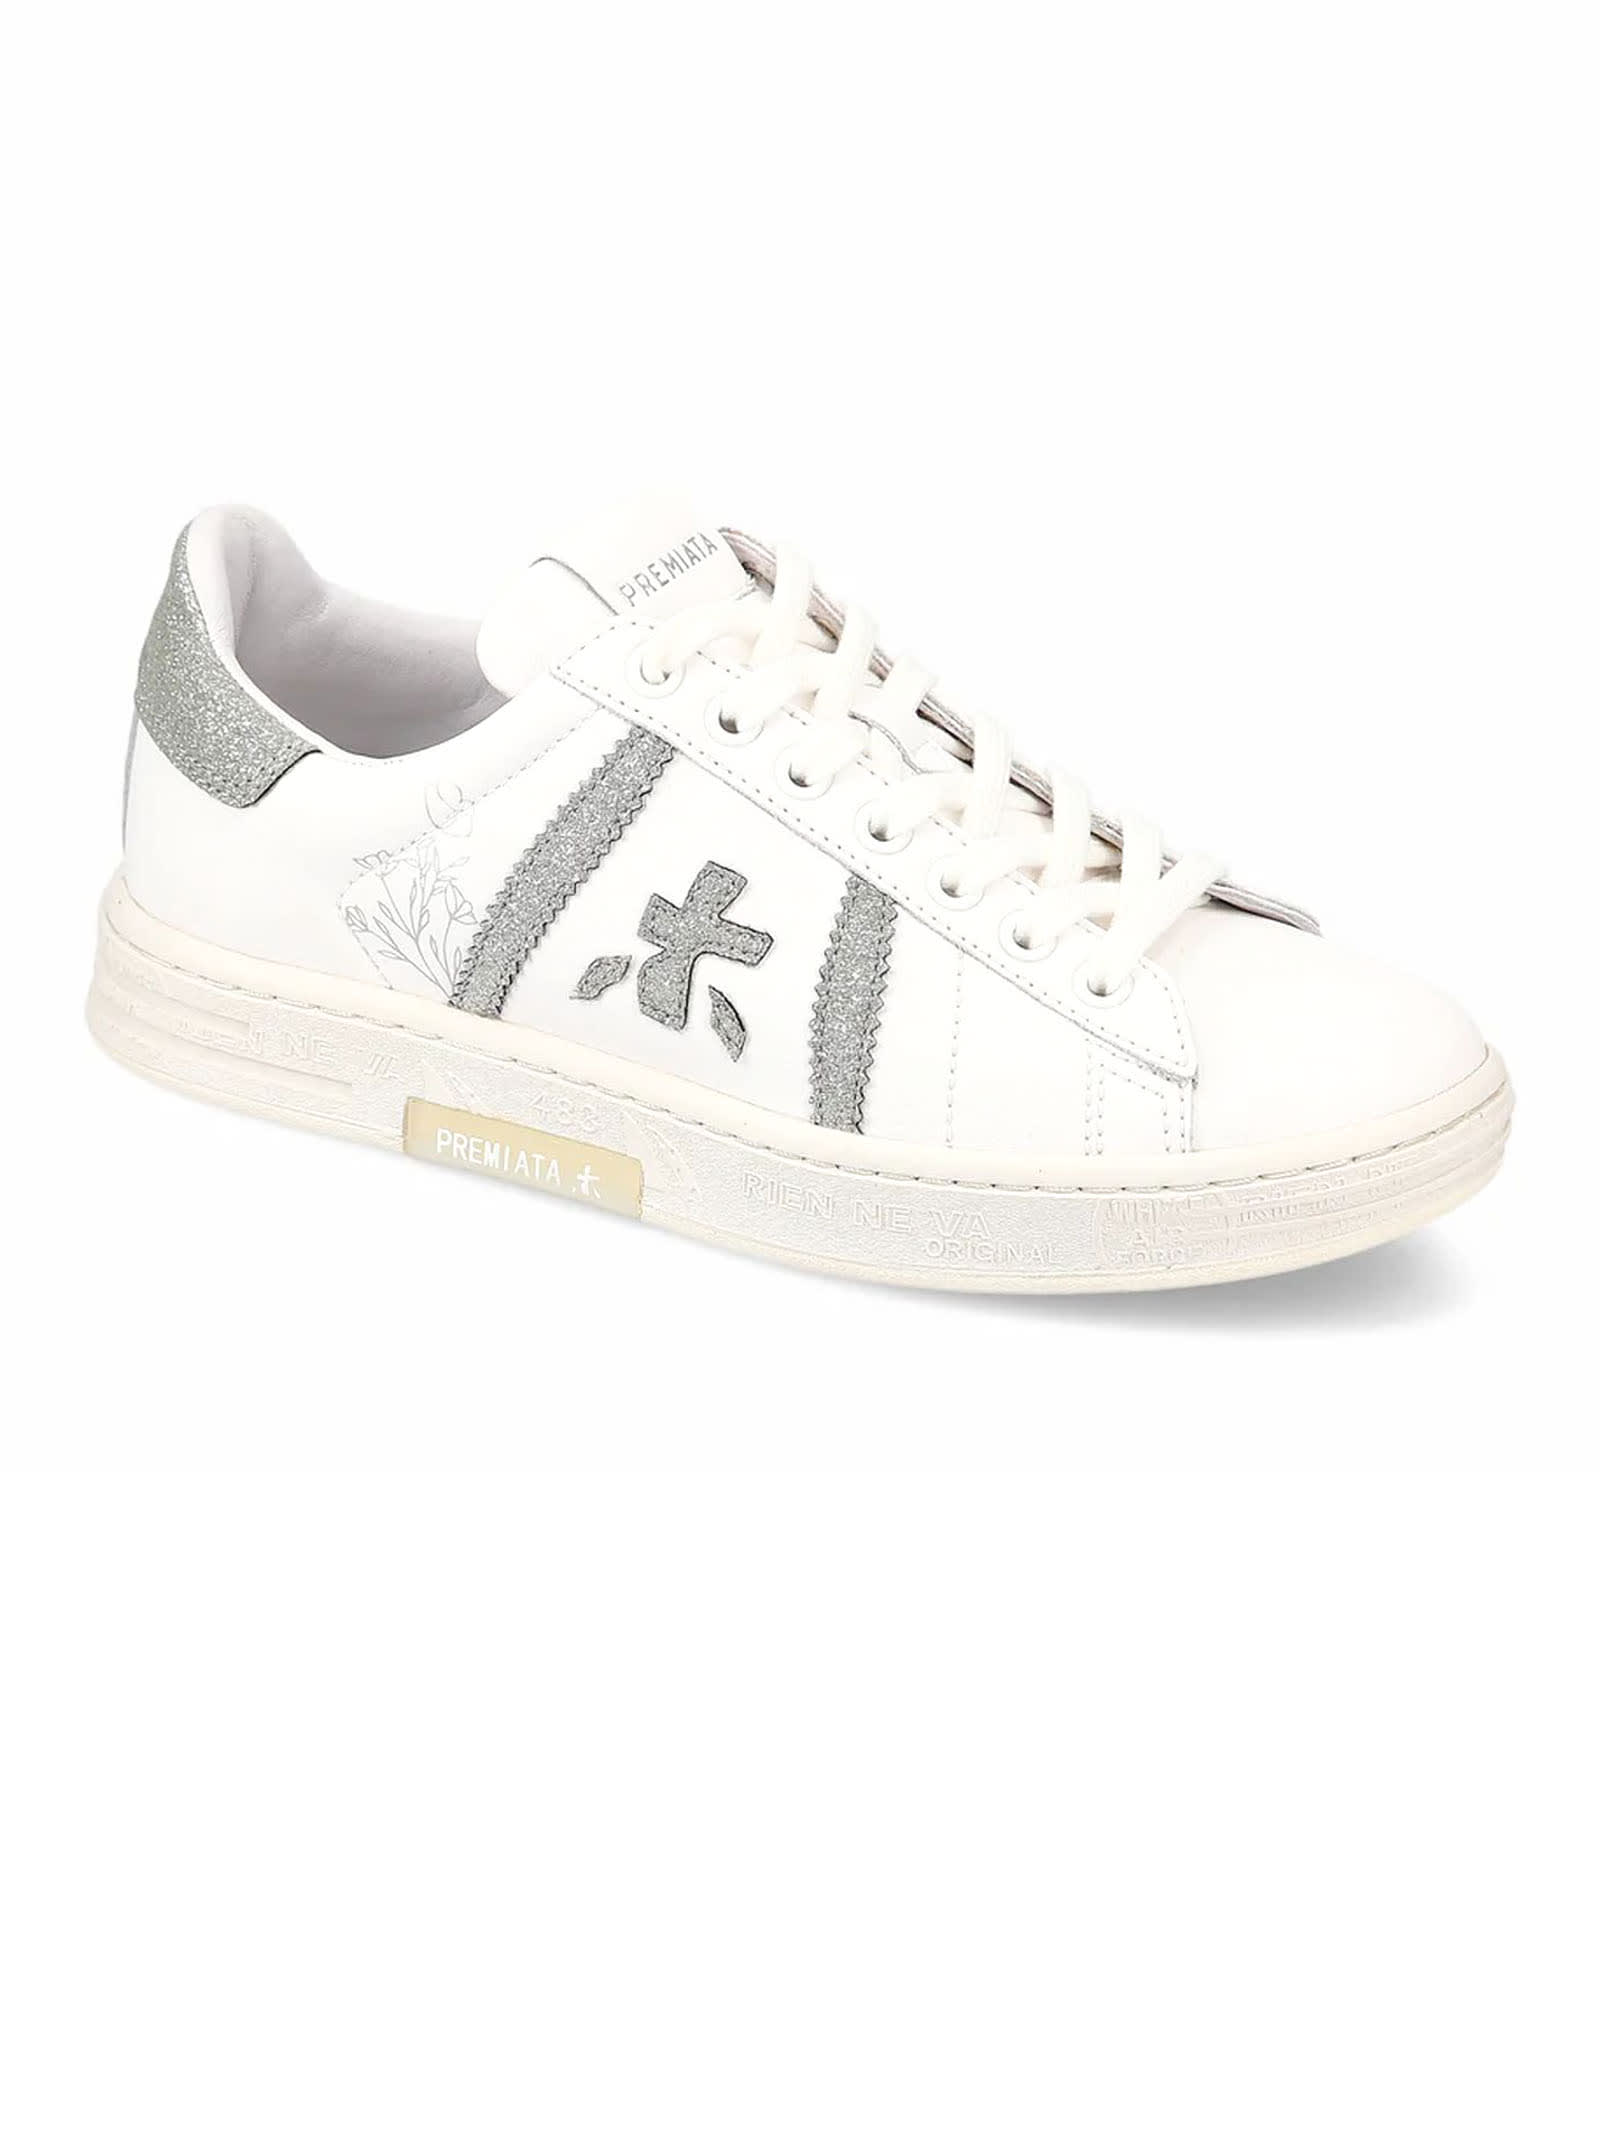 Shop Premiata Sneakers White In Bianco E Argento